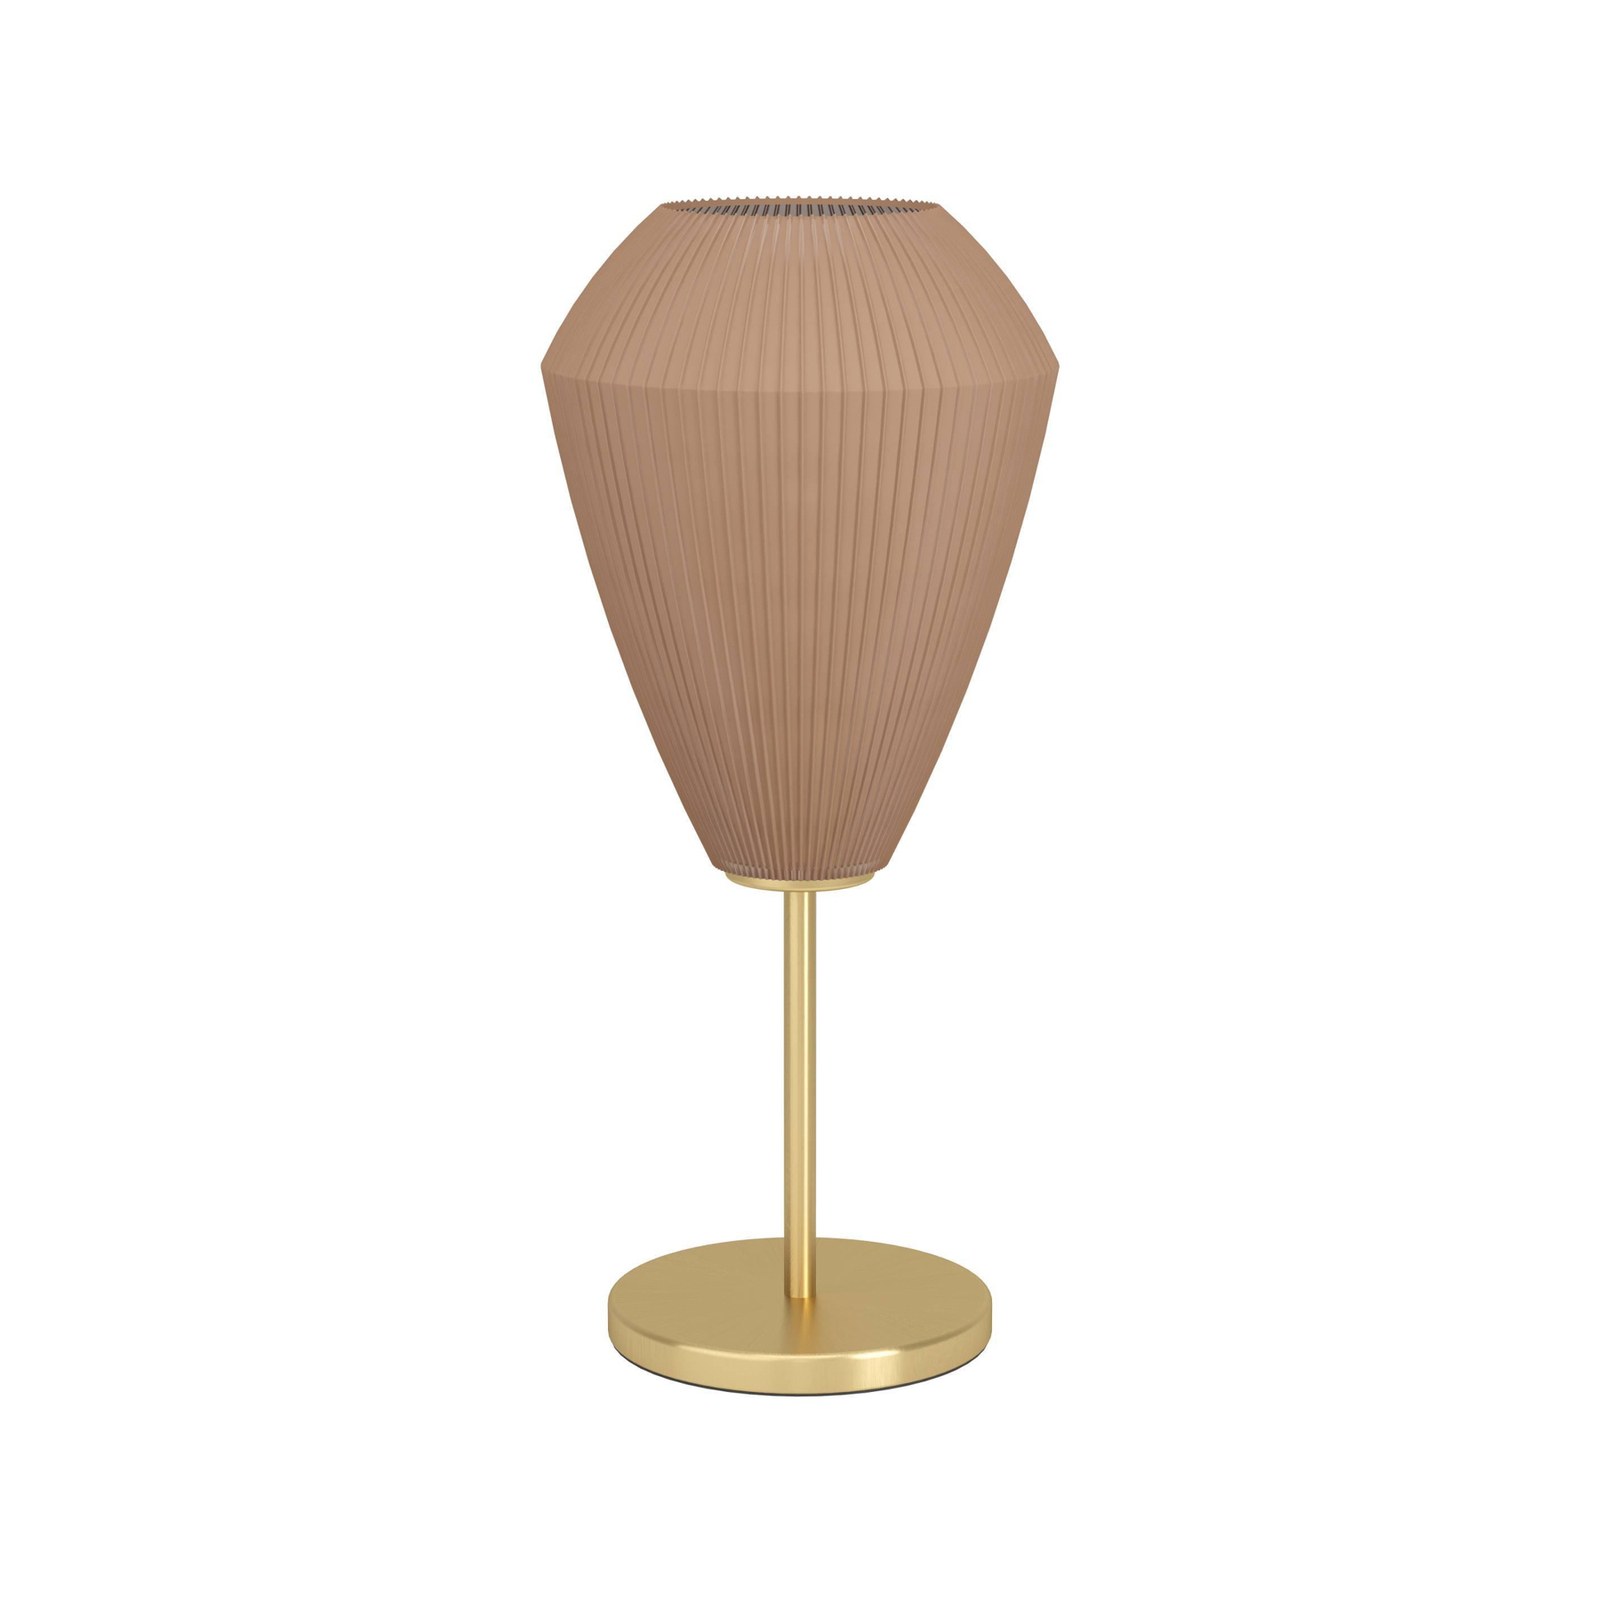 Lampa stołowa Caprarola, wysokość 46 cm, kolor piaskowy/mosiądz, szkło